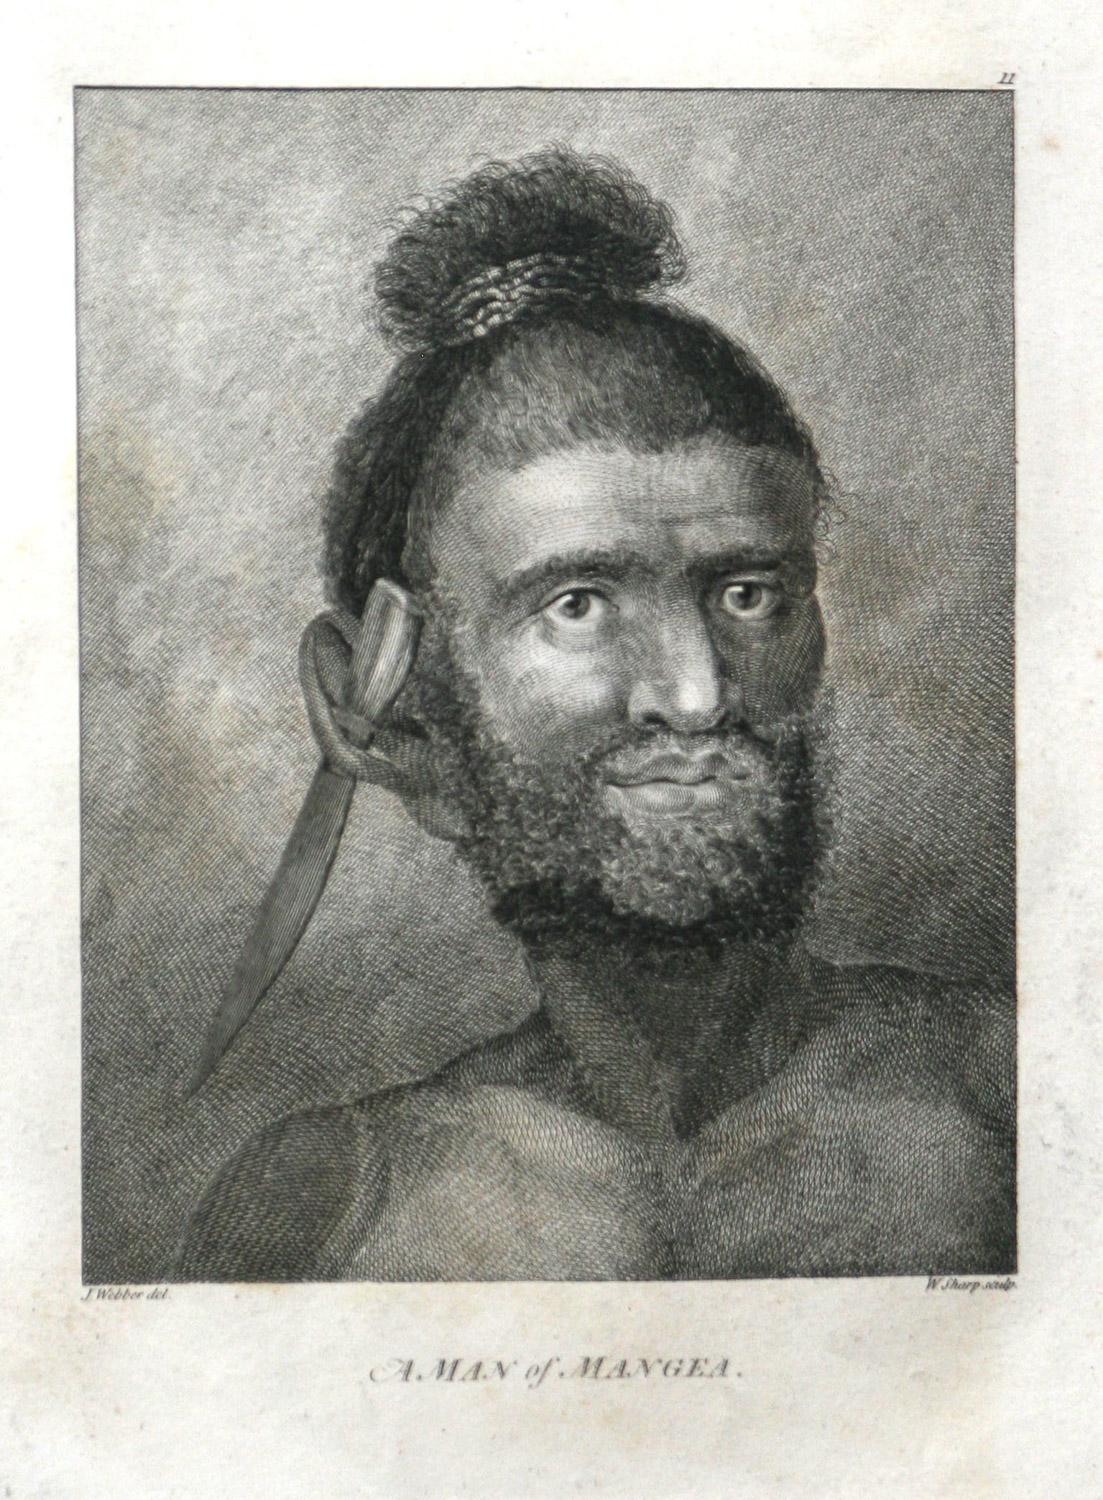 Un homme de Mangea 1784 dernier voyage du capitaine Cook par John Webber